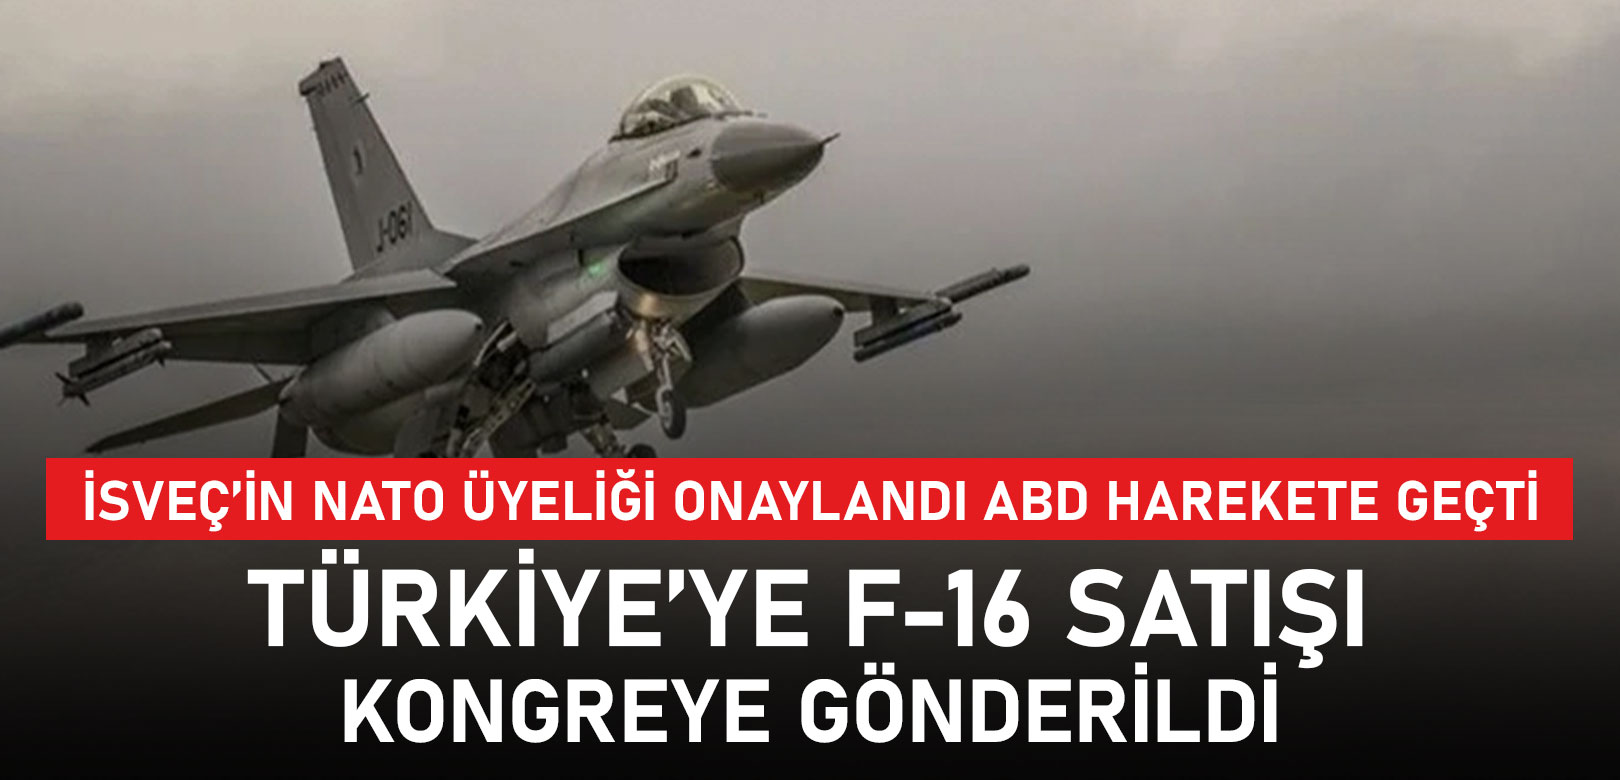 ABD, Türkiye'ye F-16 satışının uygun olduğuna ilişkin bildirimini Kongre'ye gönderdi